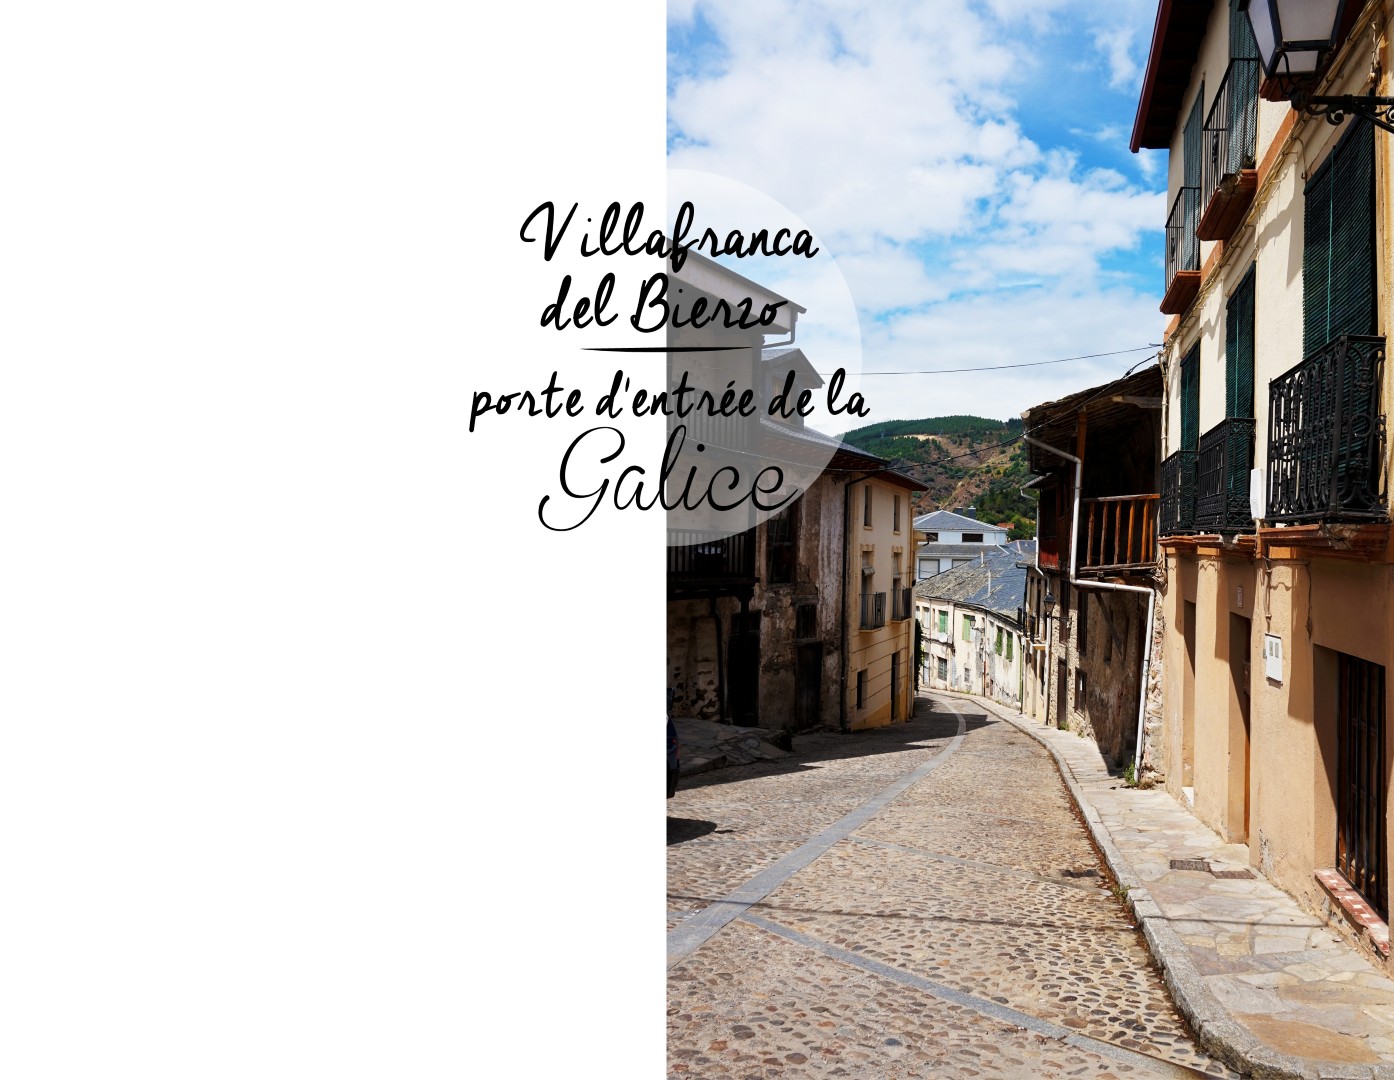 Sur les routes de Galice - Villafranca del Bierzo